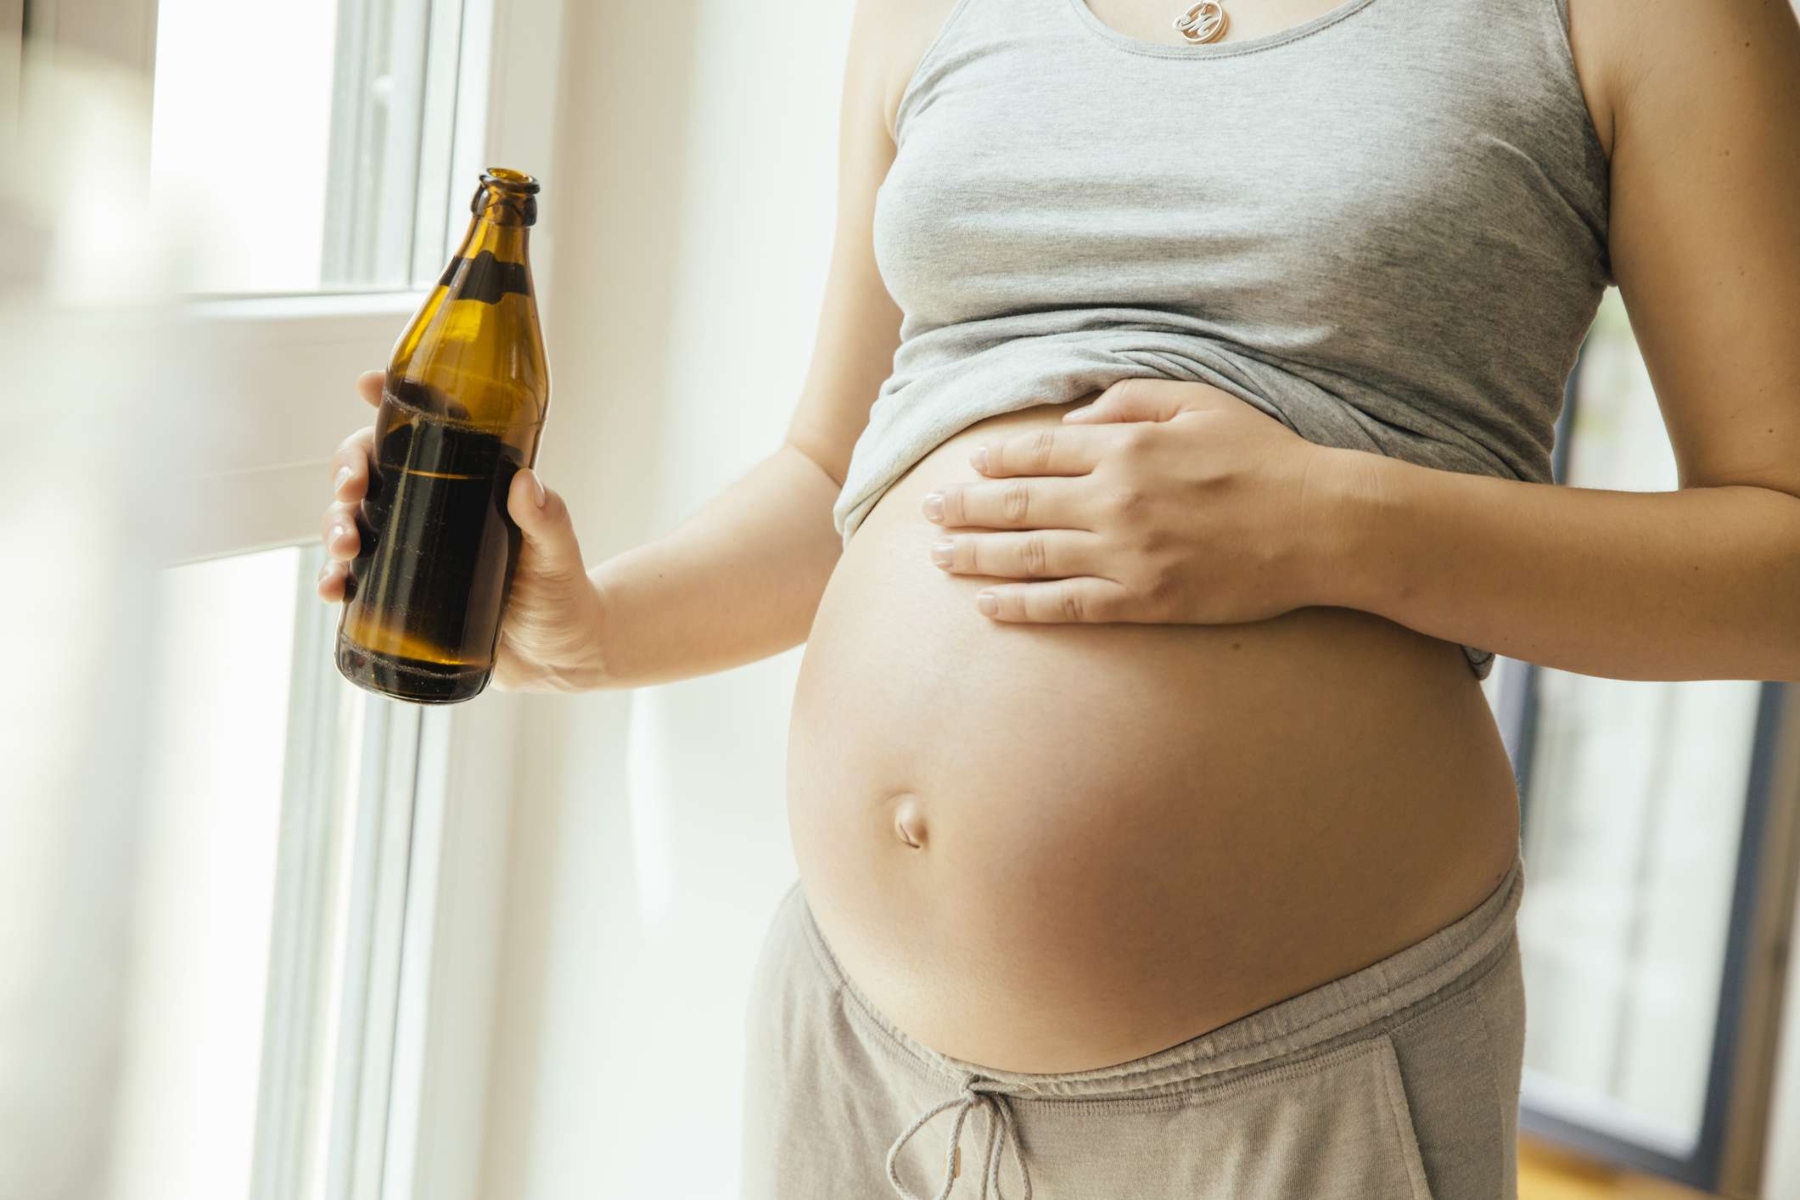 Προγεννητική ανάπτυξη: H επίδραση της χαμηλής έως μέτριας χρήσης αλκοόλ στην προγεννητική ανάπτυξη